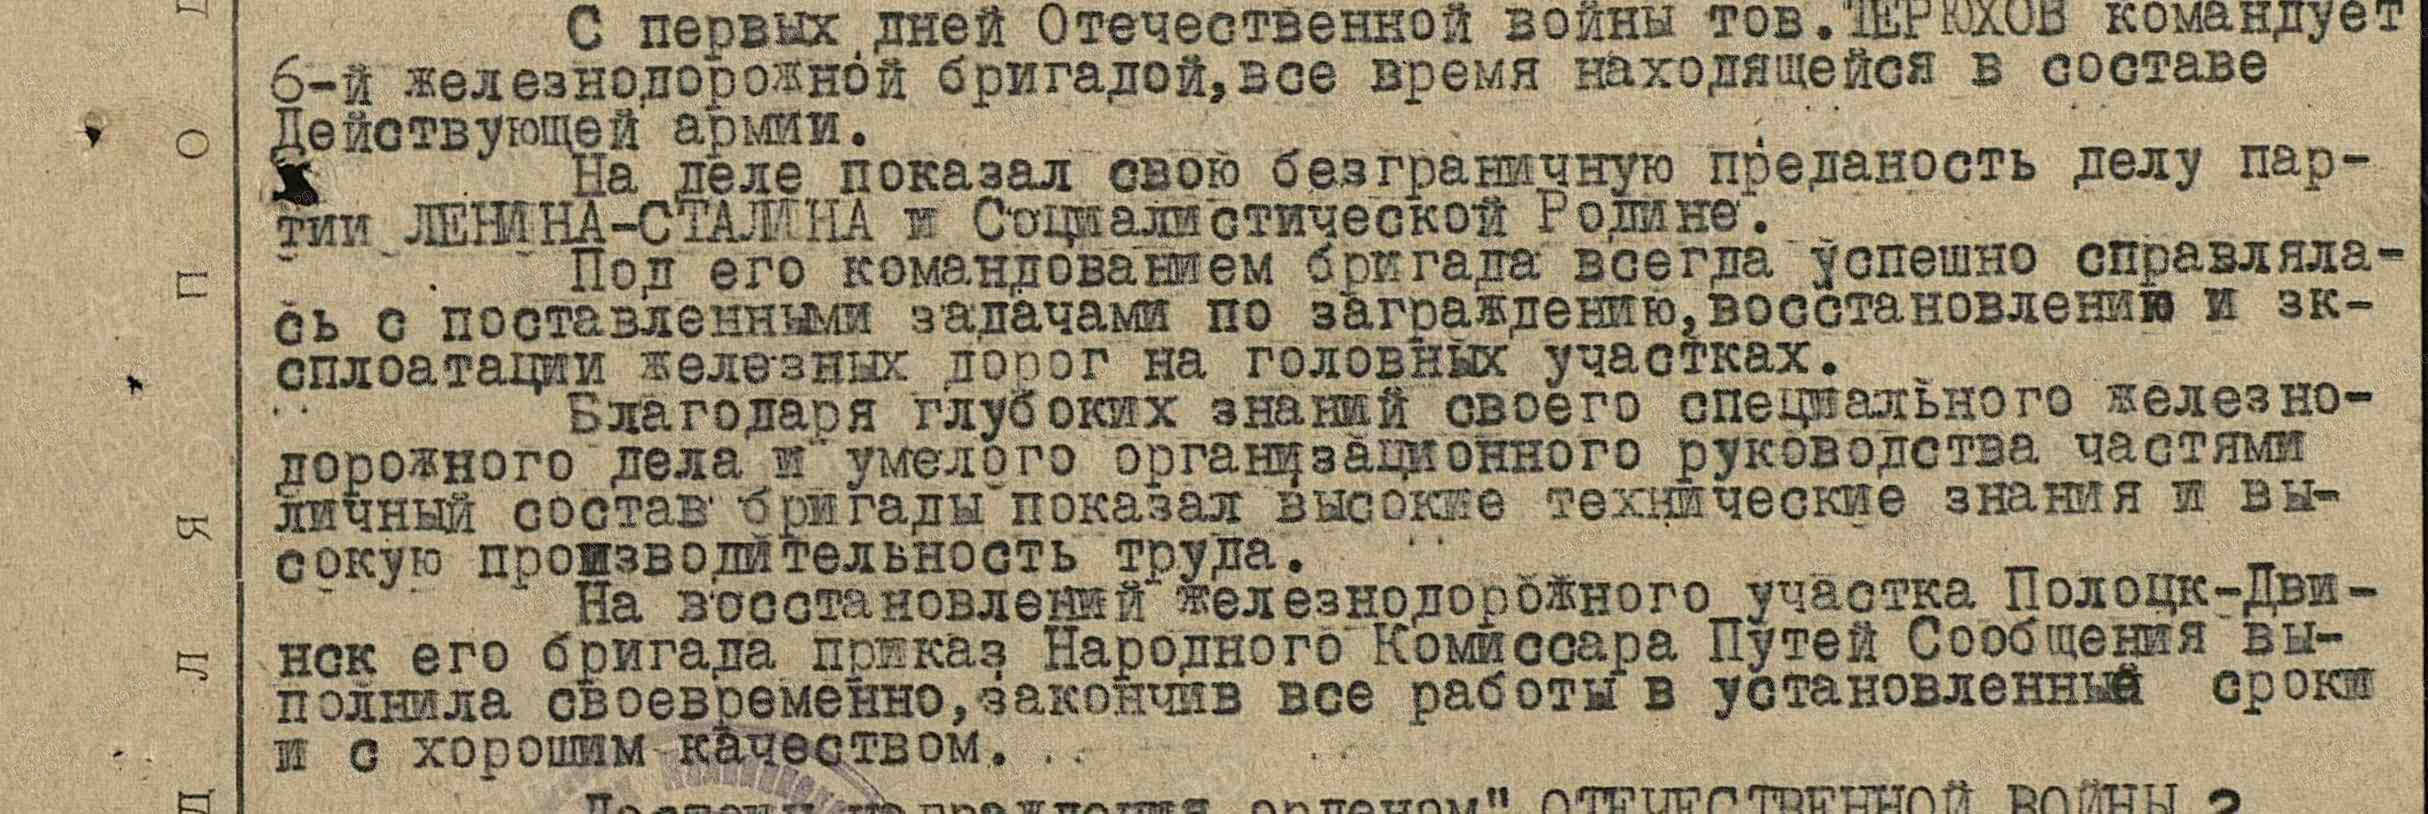 Фрагмент представления к Ордену Отечественной войны II степени